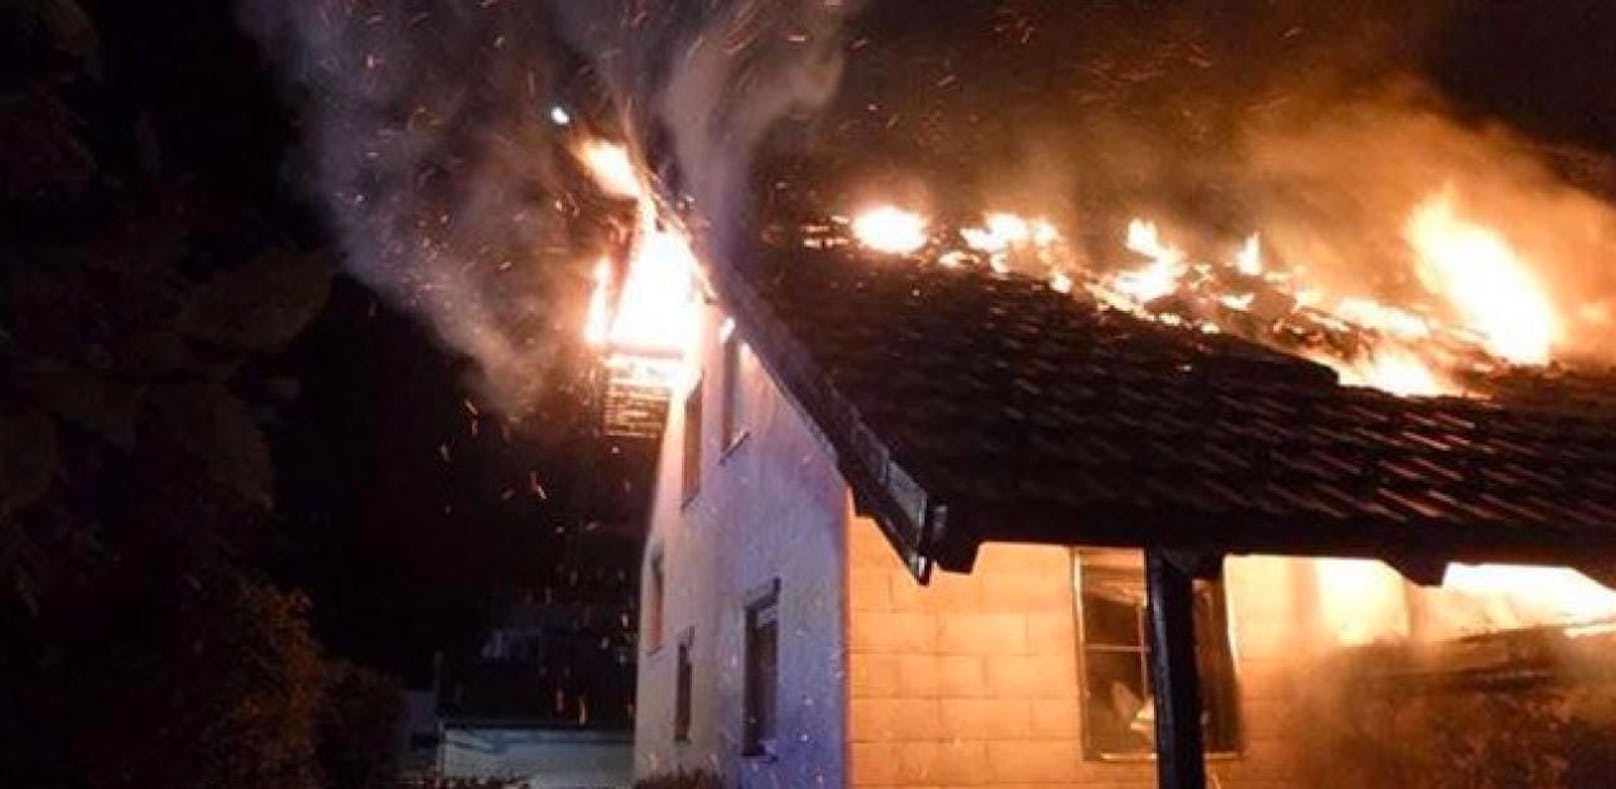 Einfamilienhaus wurde bei Brand völlig zerstört